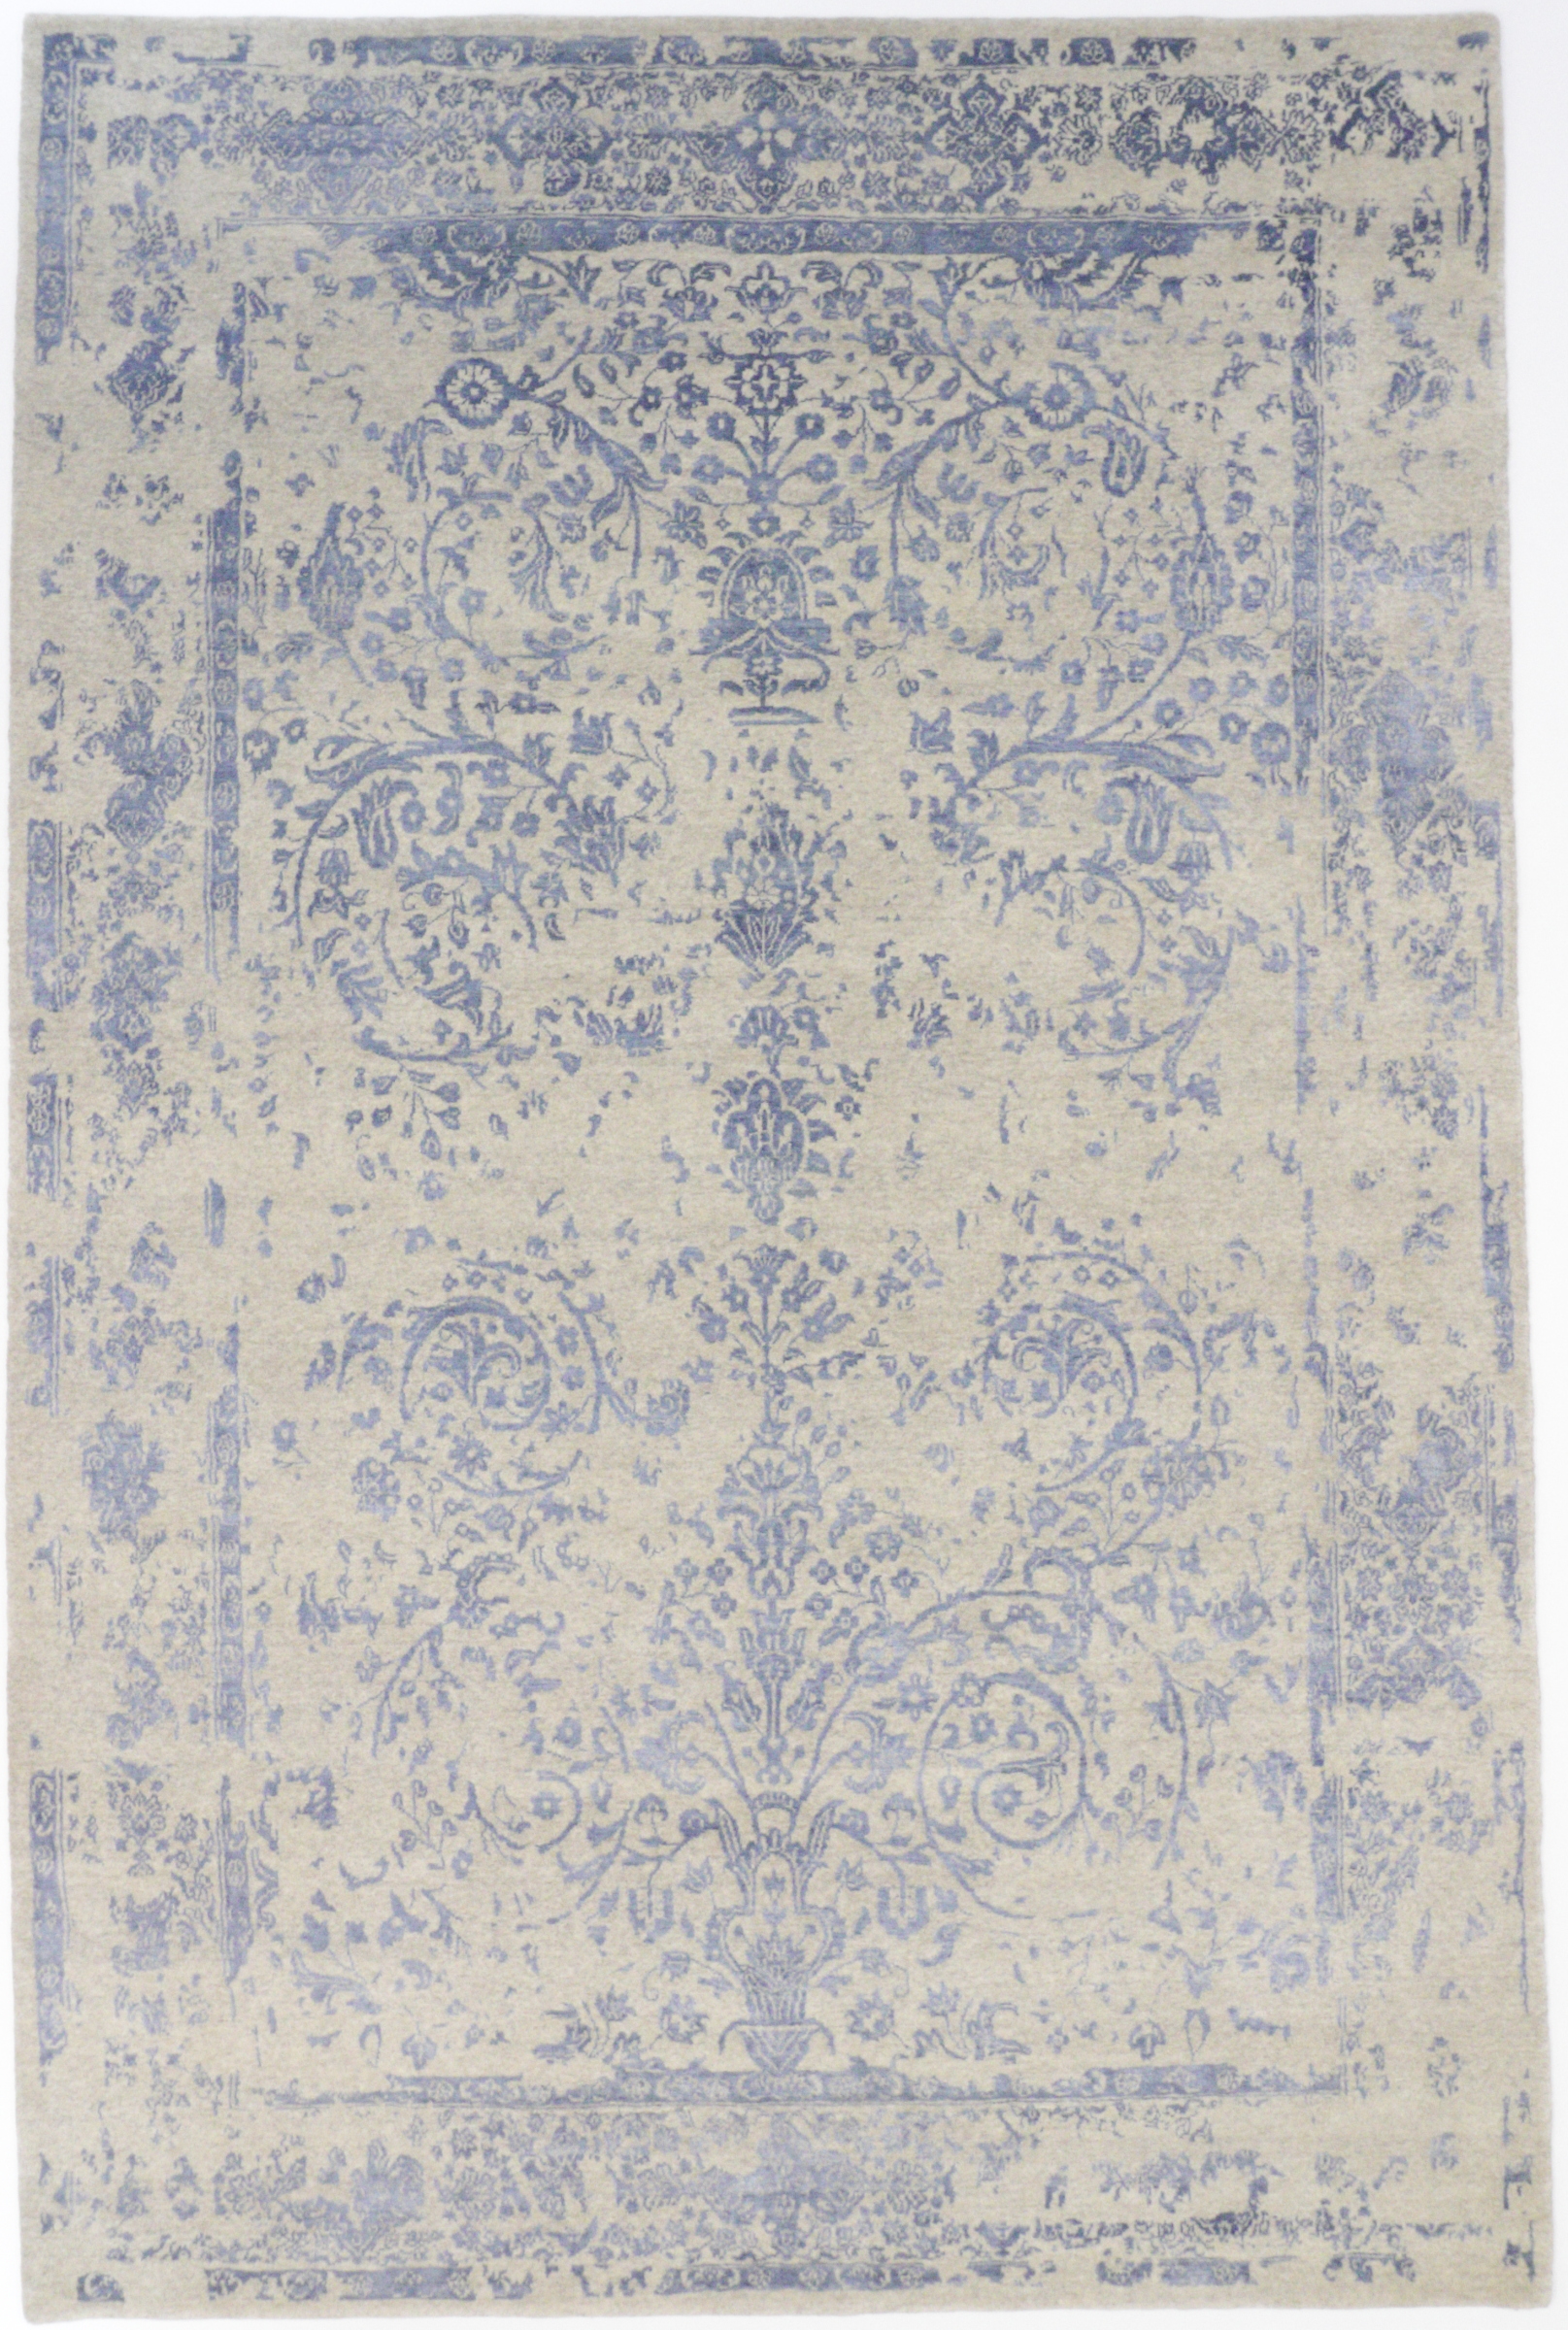 Broken Flowers blue, Indischer Designerteppich im Vintagestil, Wolle & Bambusseide, Draufsicht